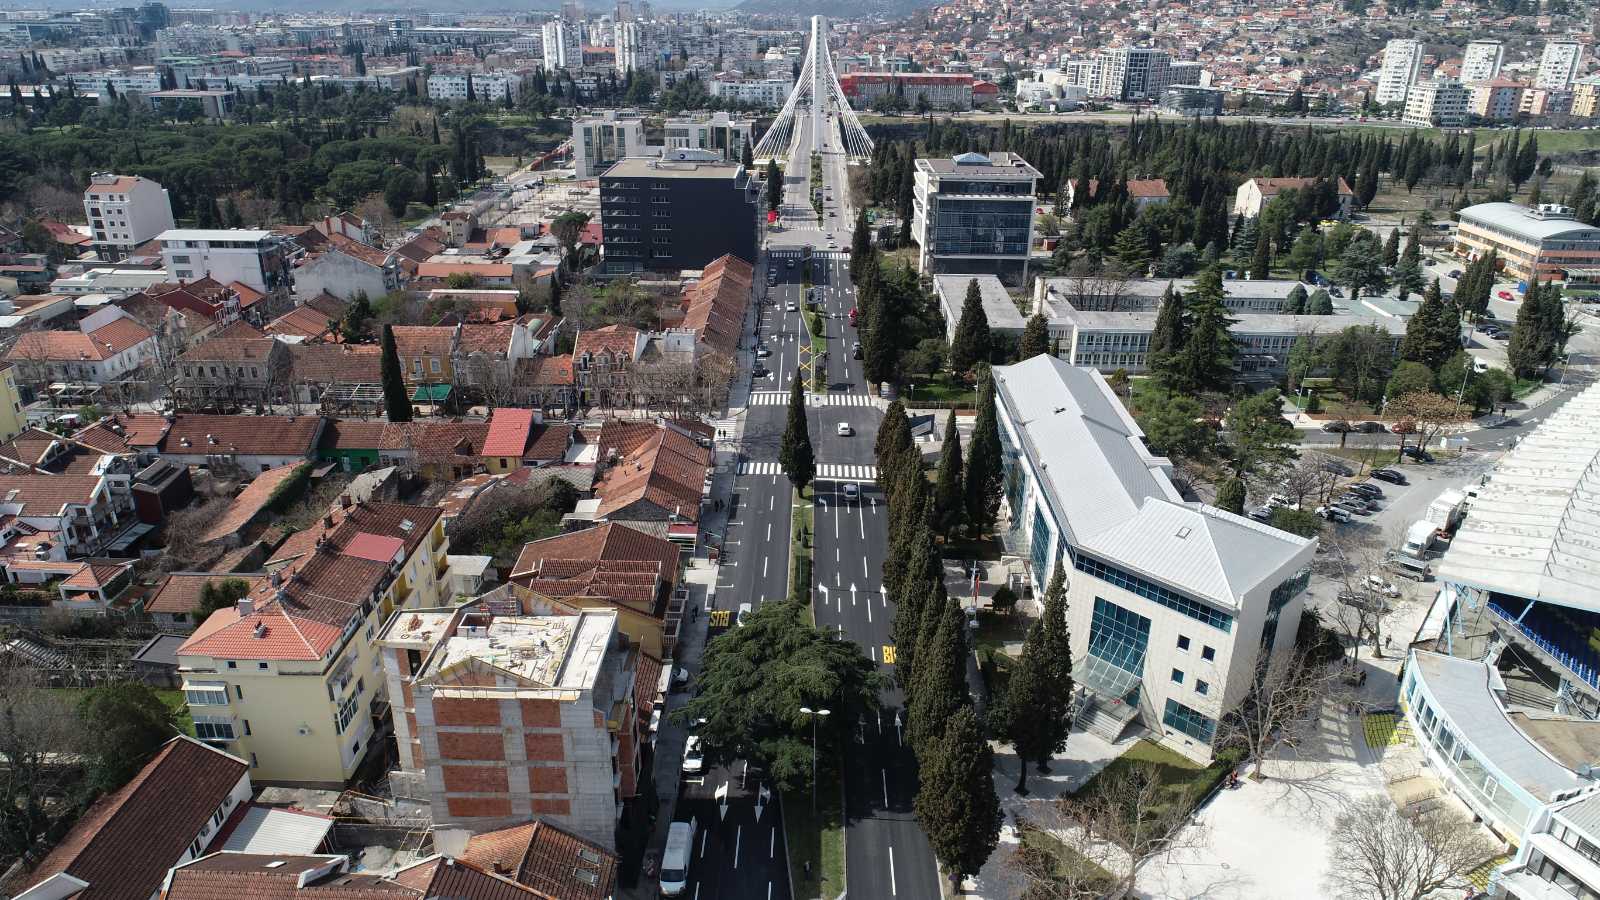 Završena rekonstrukcija Bulevara Ivana Crnojevića; Potpuno novi izgled jedne od najvažnijih saobraćajnica u centru Podgorice